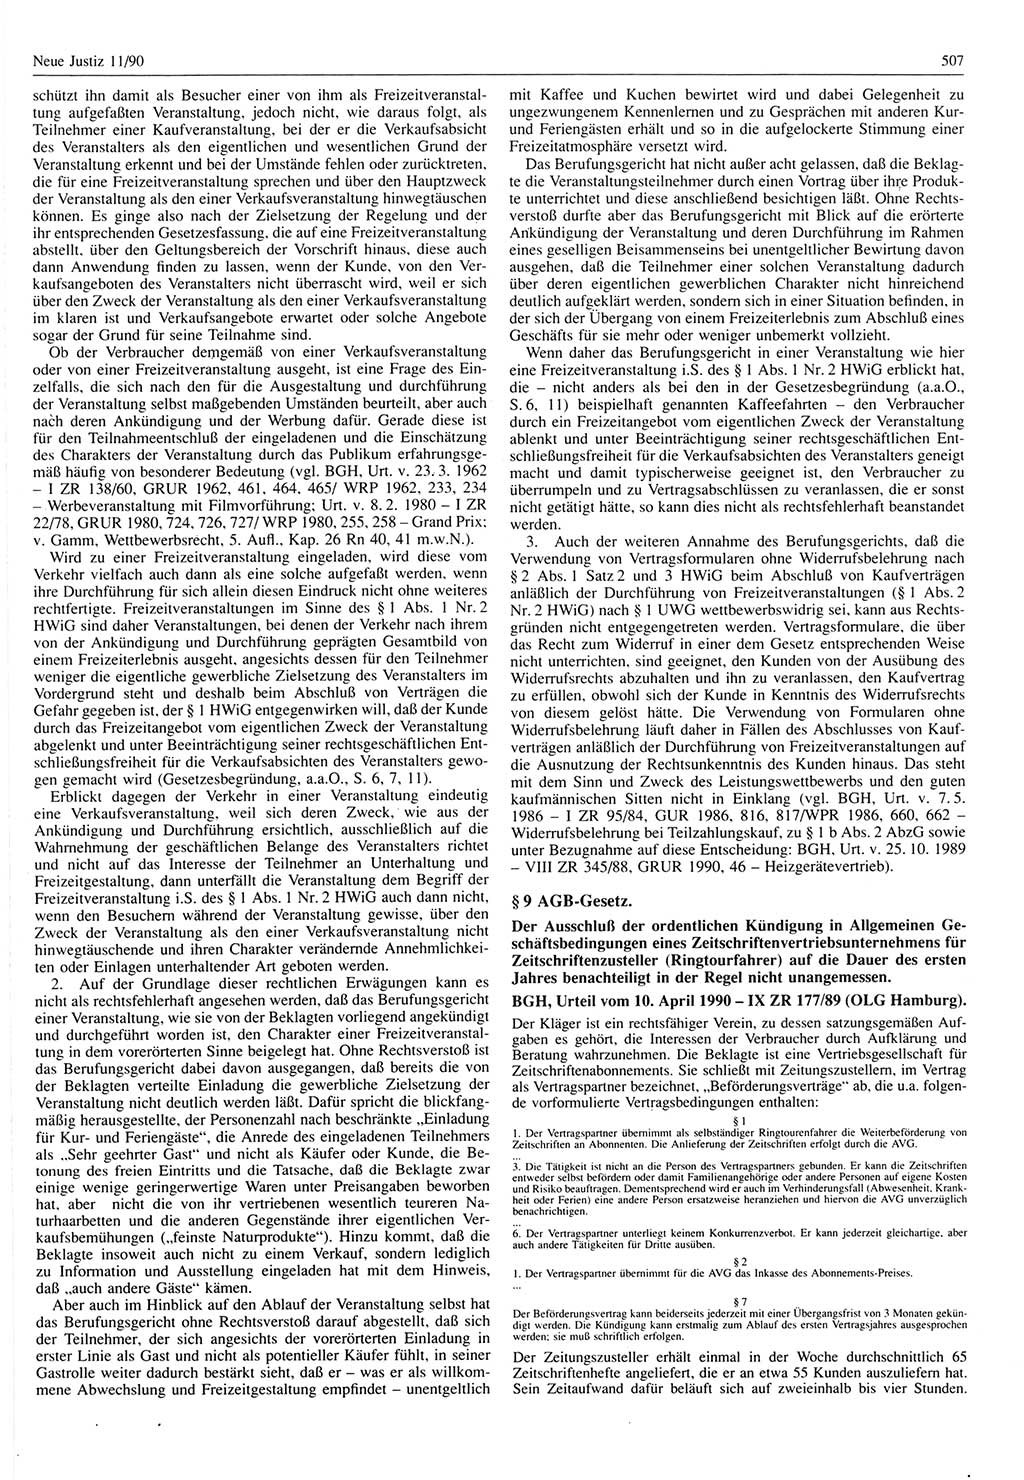 Neue Justiz (NJ), Zeitschrift für Rechtsetzung und Rechtsanwendung [Deutsche Demokratische Republik (DDR)], 44. Jahrgang 1990, Seite 507 (NJ DDR 1990, S. 507)